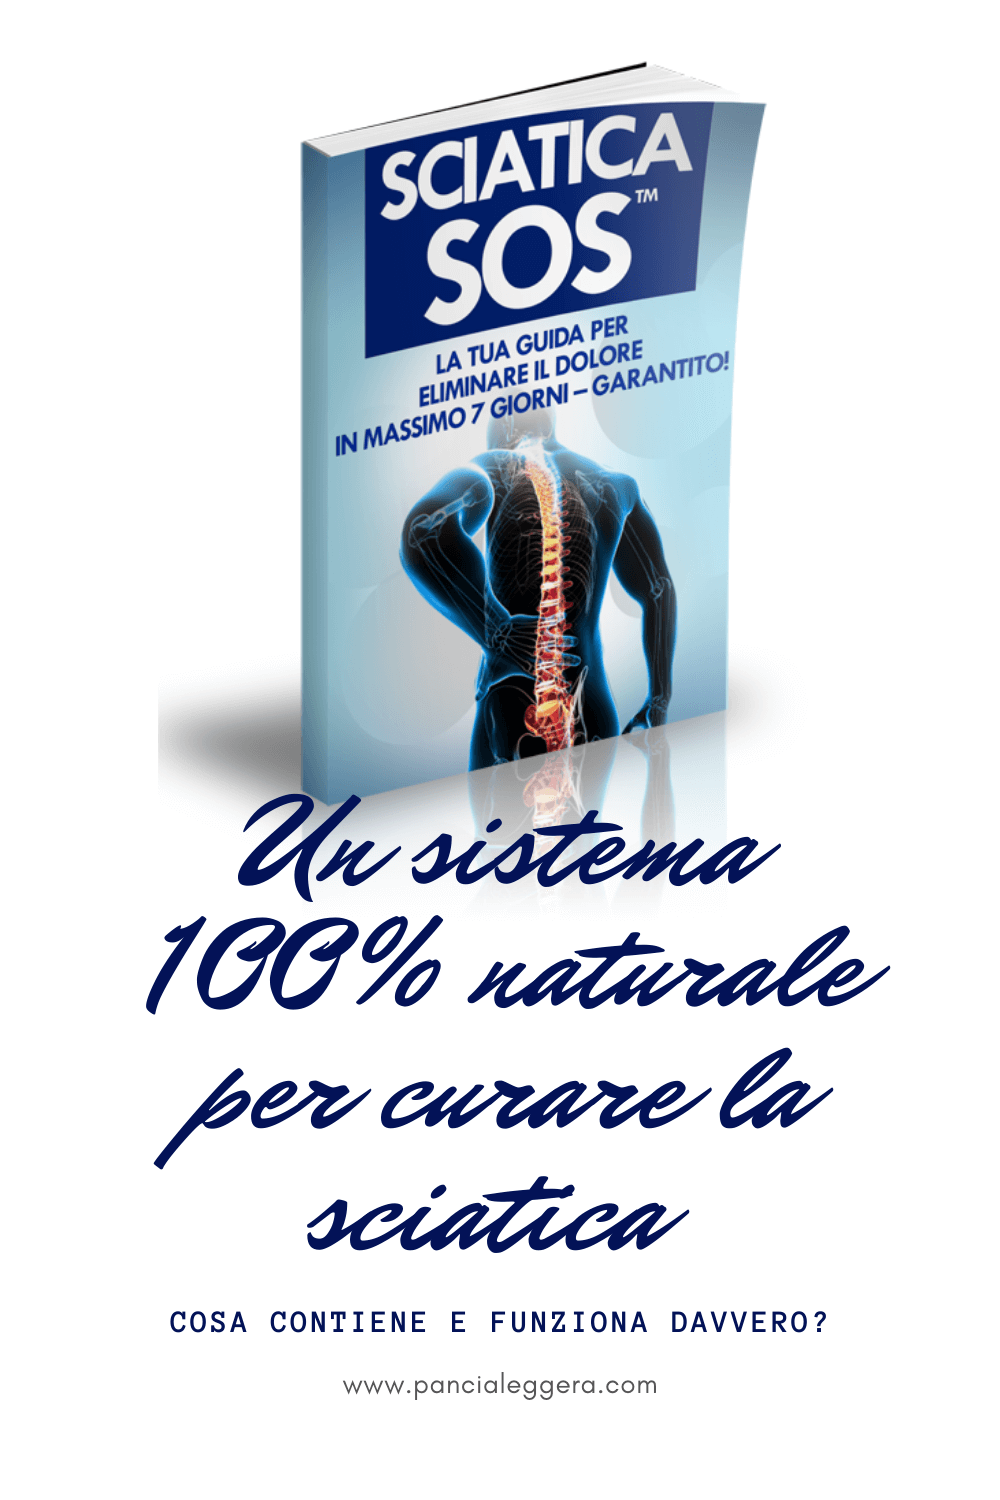 Sciatica SOS funziona davvero? Recensione dettagliata del libro di Glen Johnson